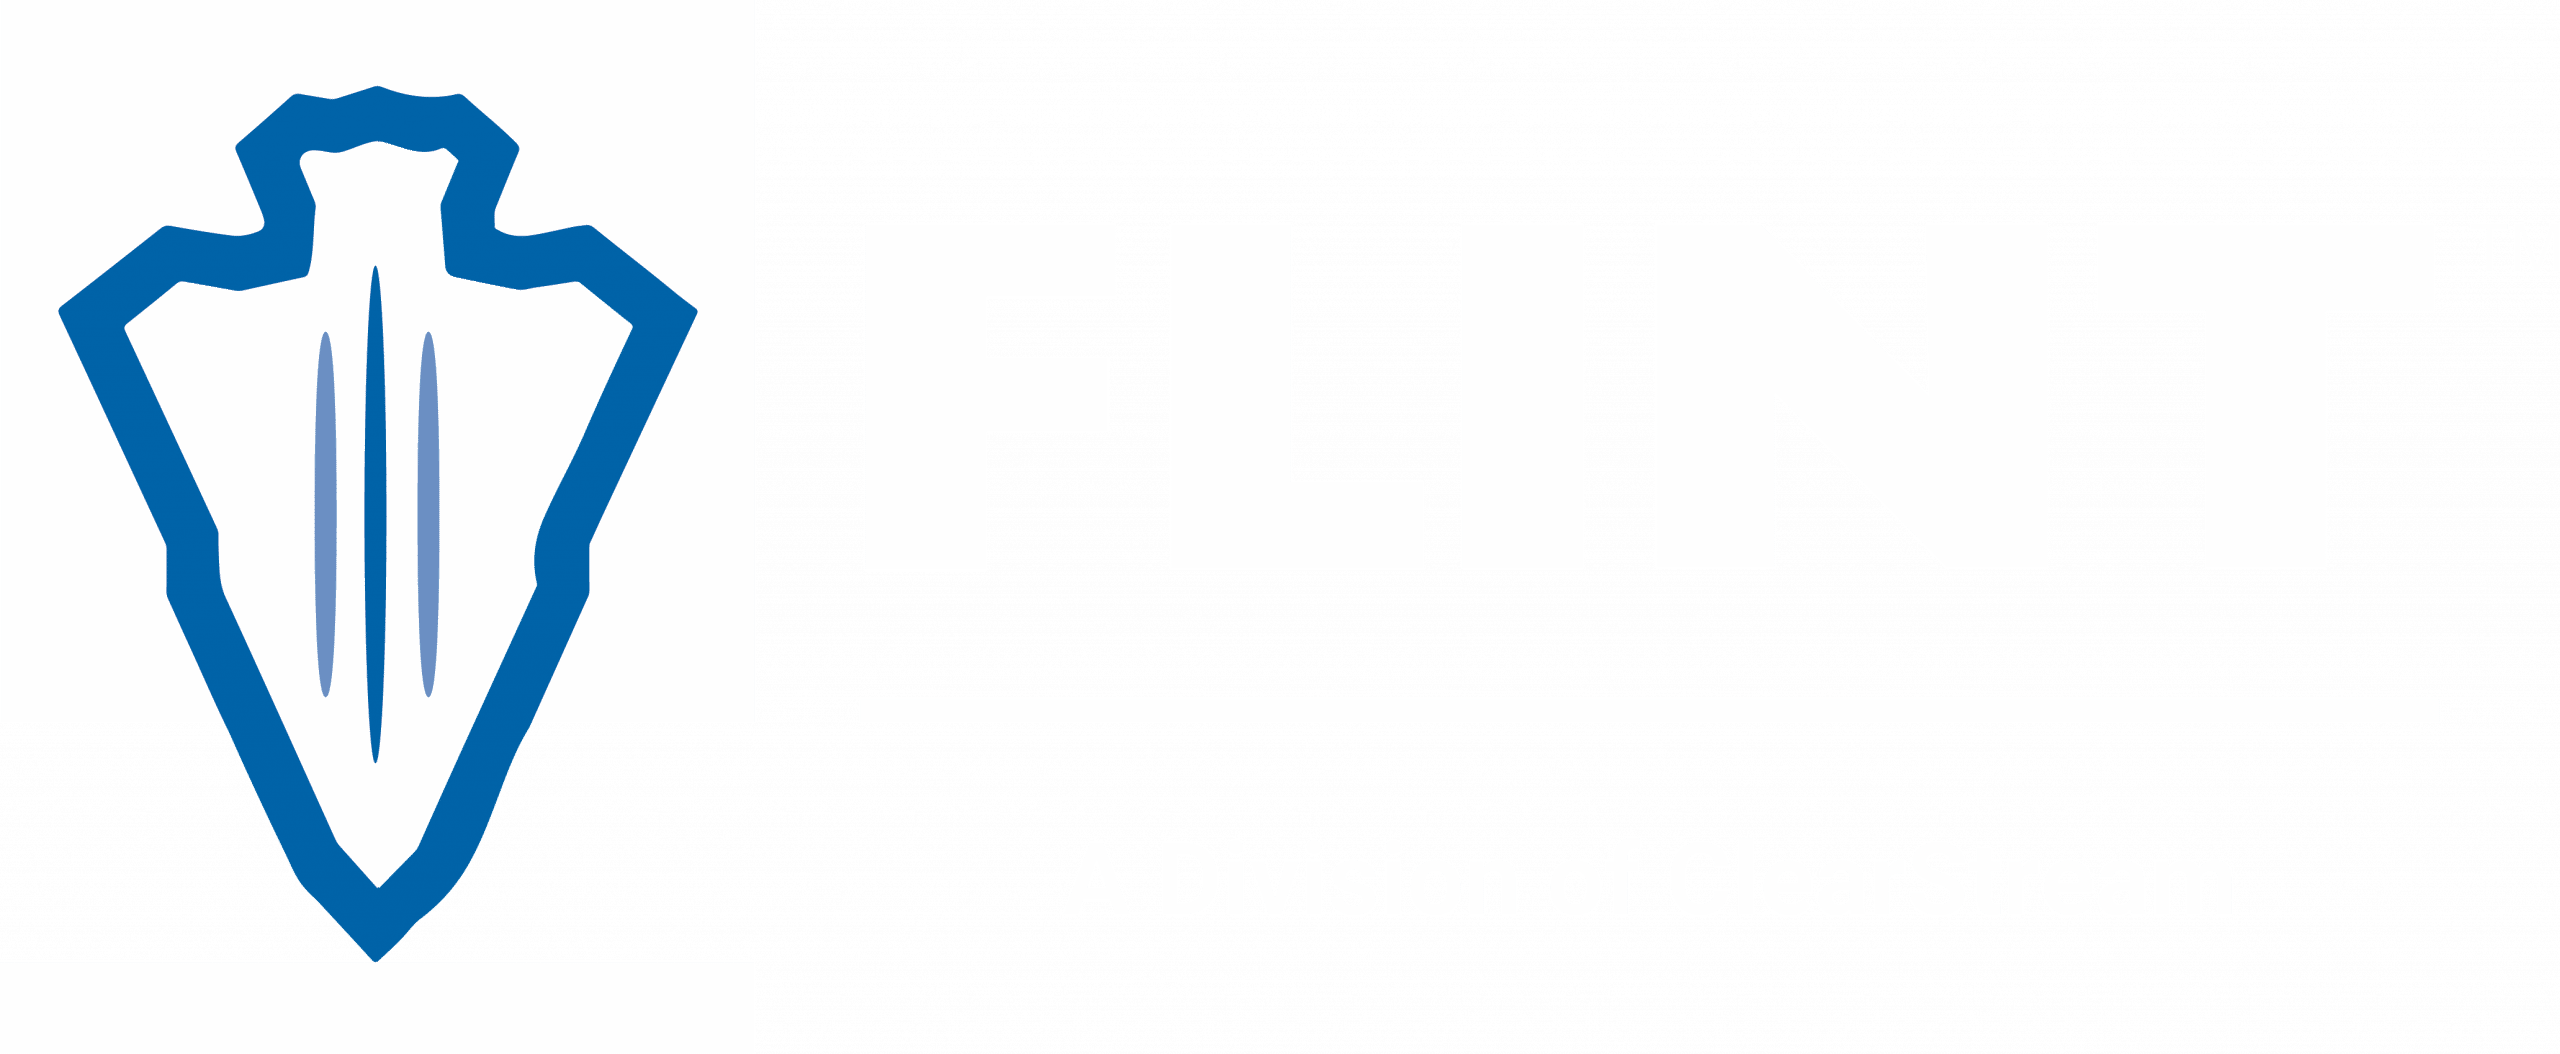 Flint-branding-FINAL-2019-01